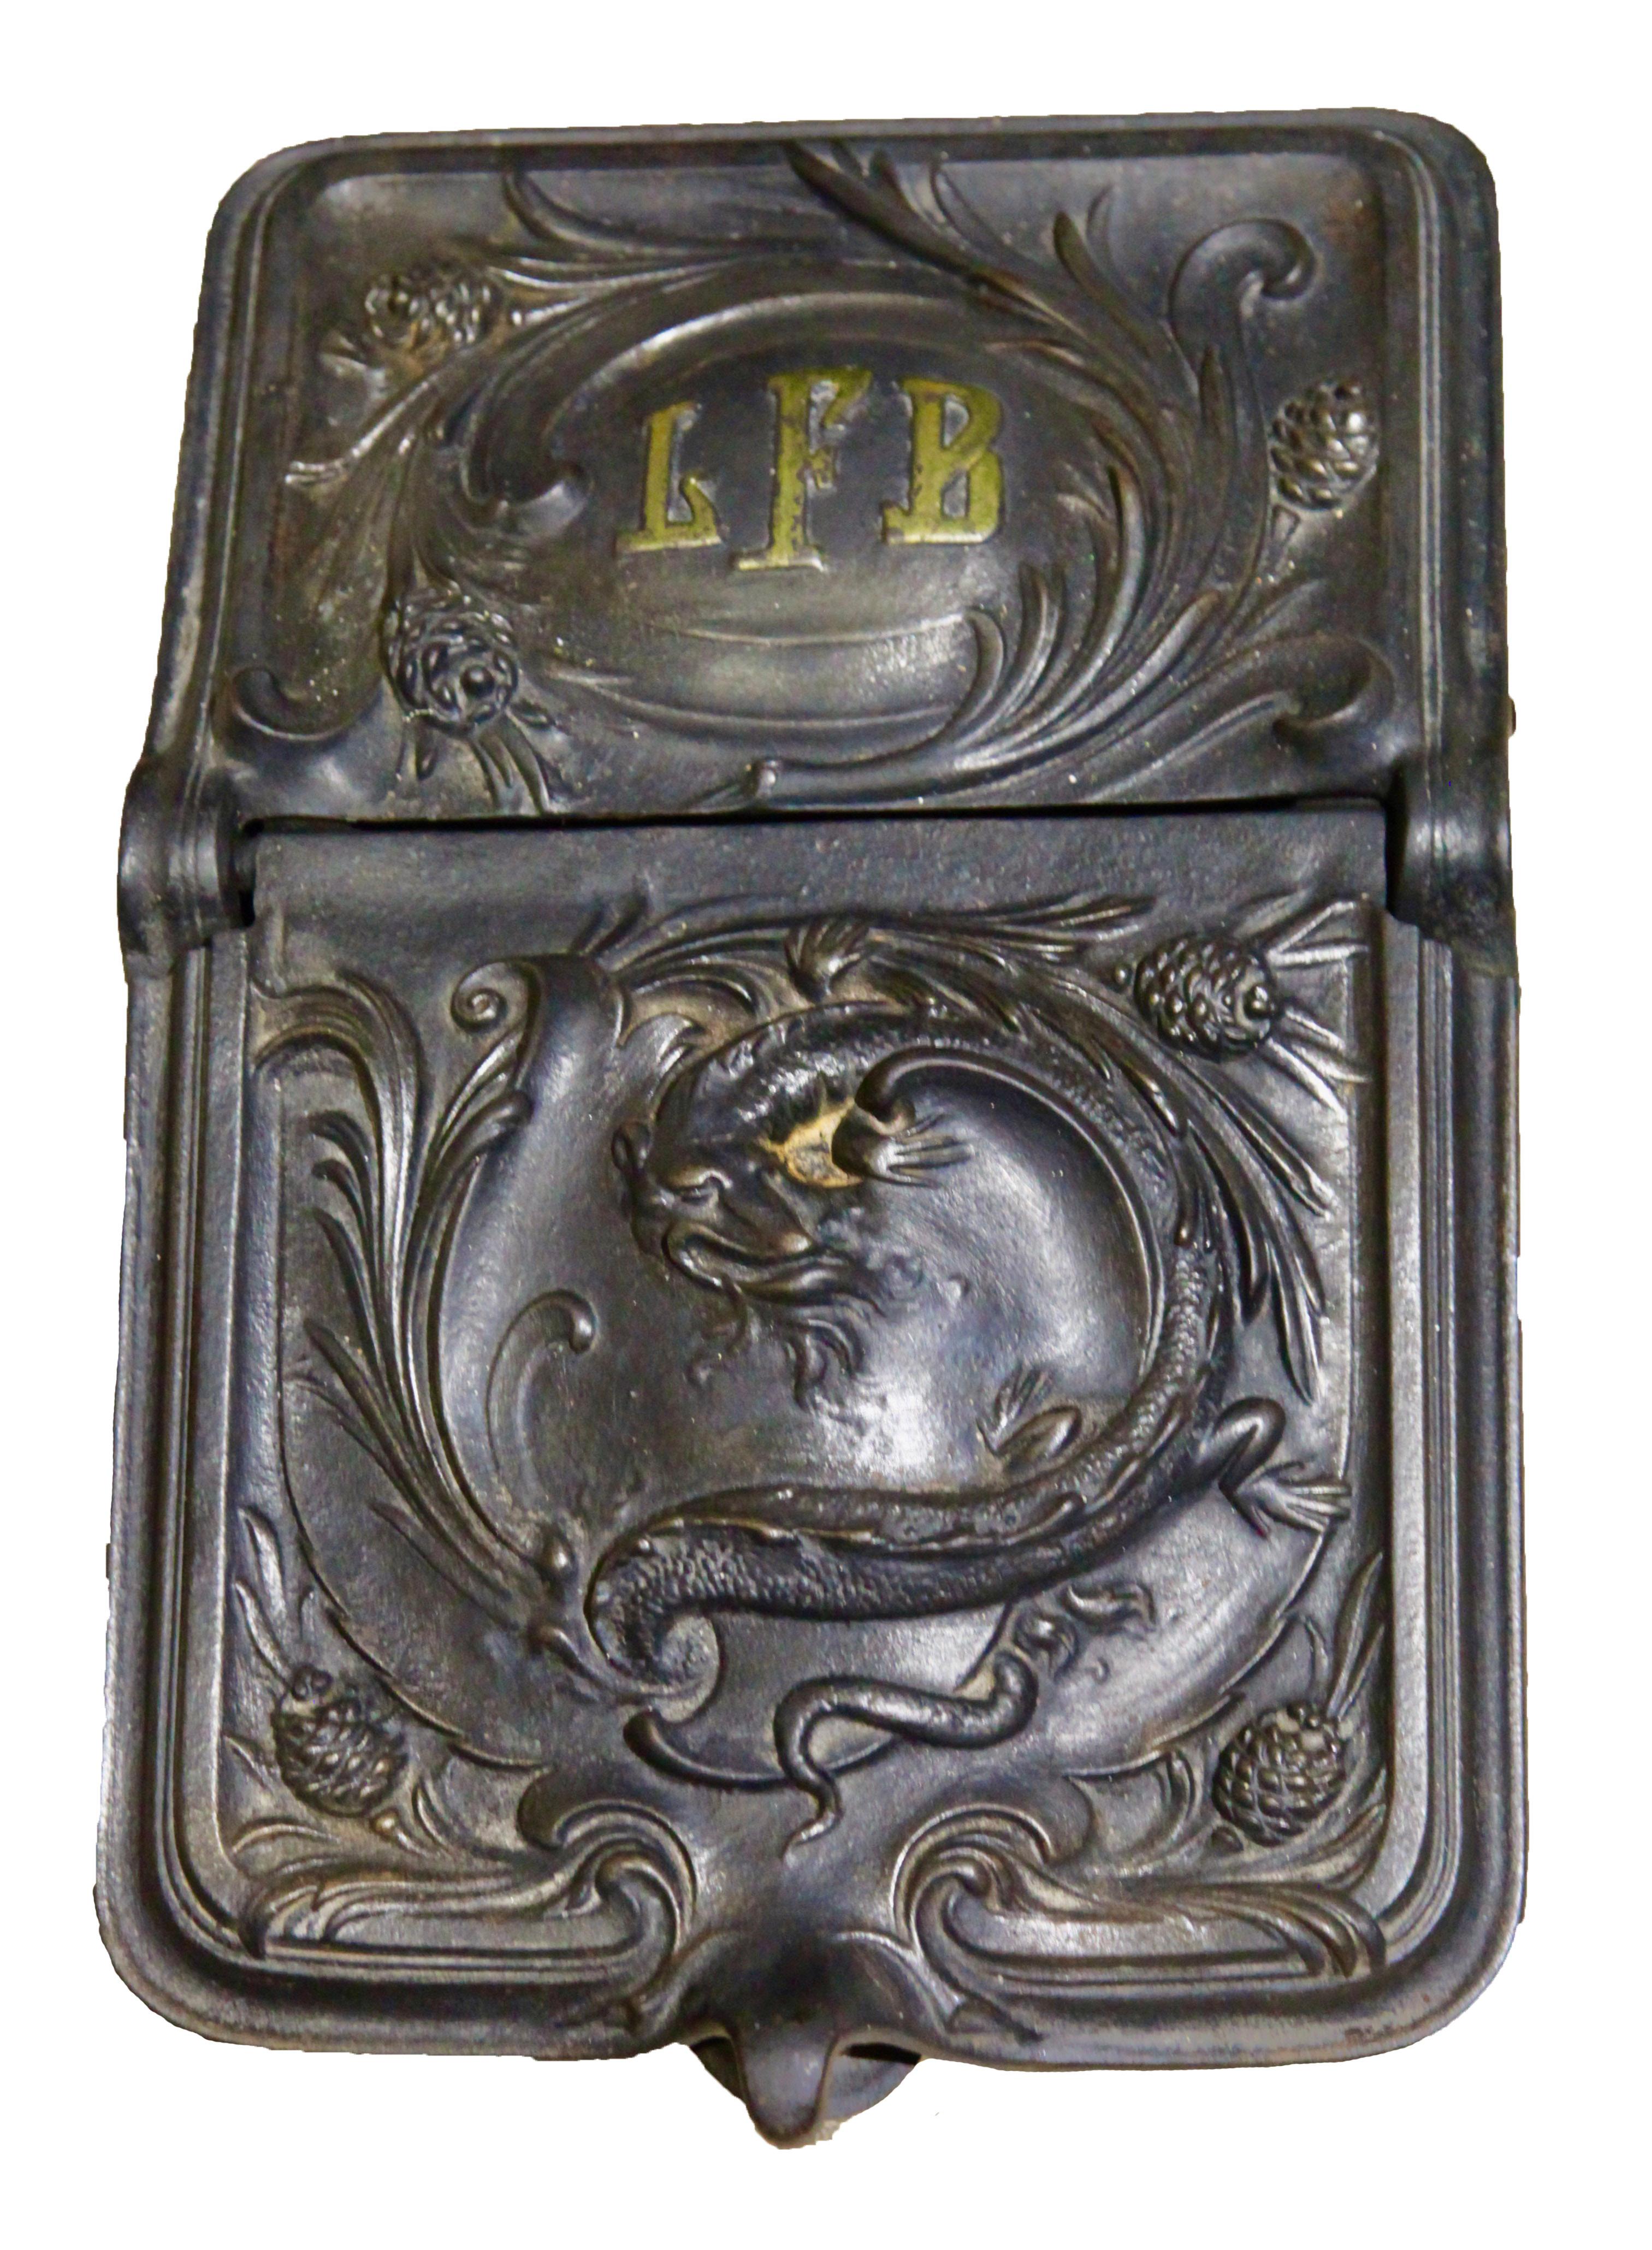 Fonderie de métaux Foubrux, Haren, Belgique, vers 1900.
Très beau sceau à charbon en fonte, très orné. L'auge à charbon repose sur quatre pieds et présente un design Décoratif très clair. L'écoutille à charbon date de la fin du XIXe siècle. Au